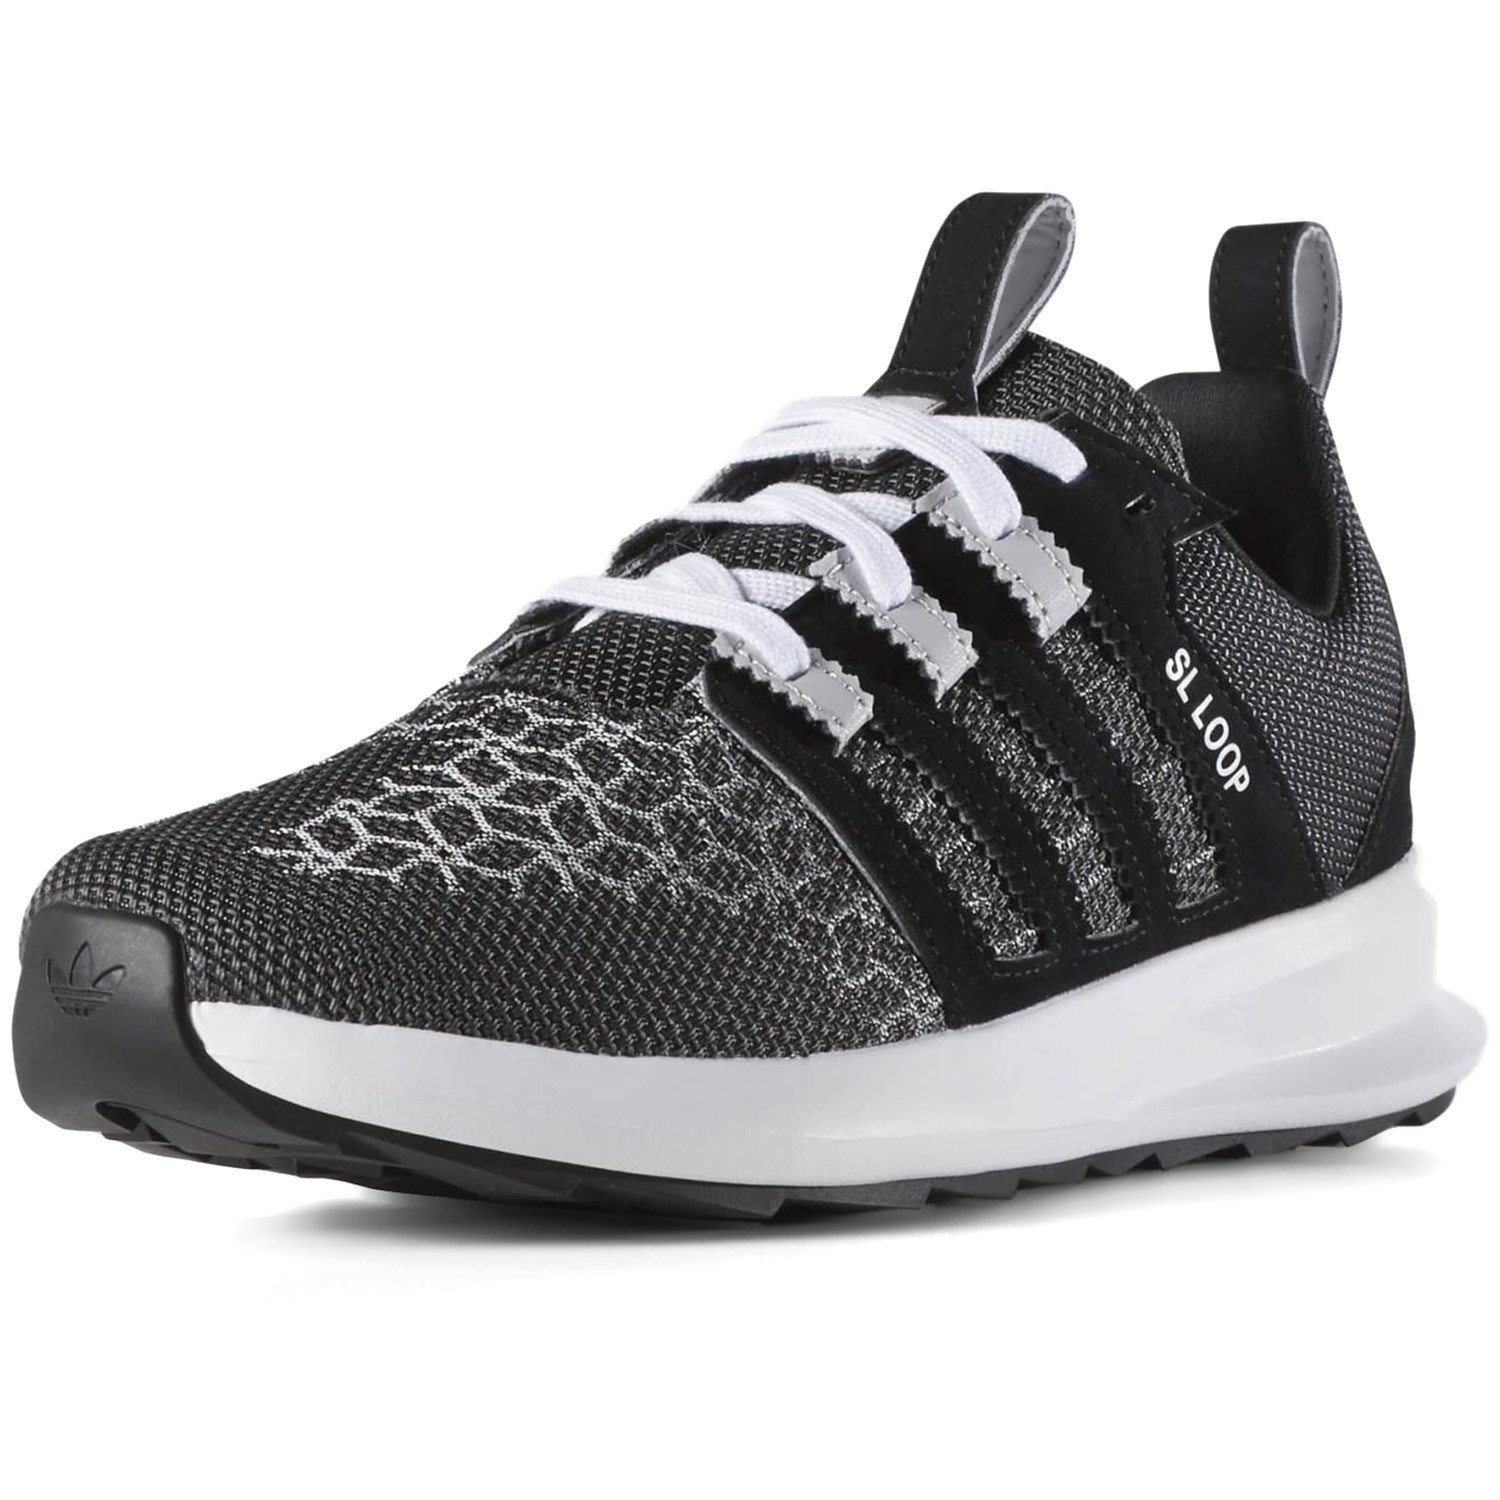 Adidas Originals SL Loop Runner Weave Shoes | evo